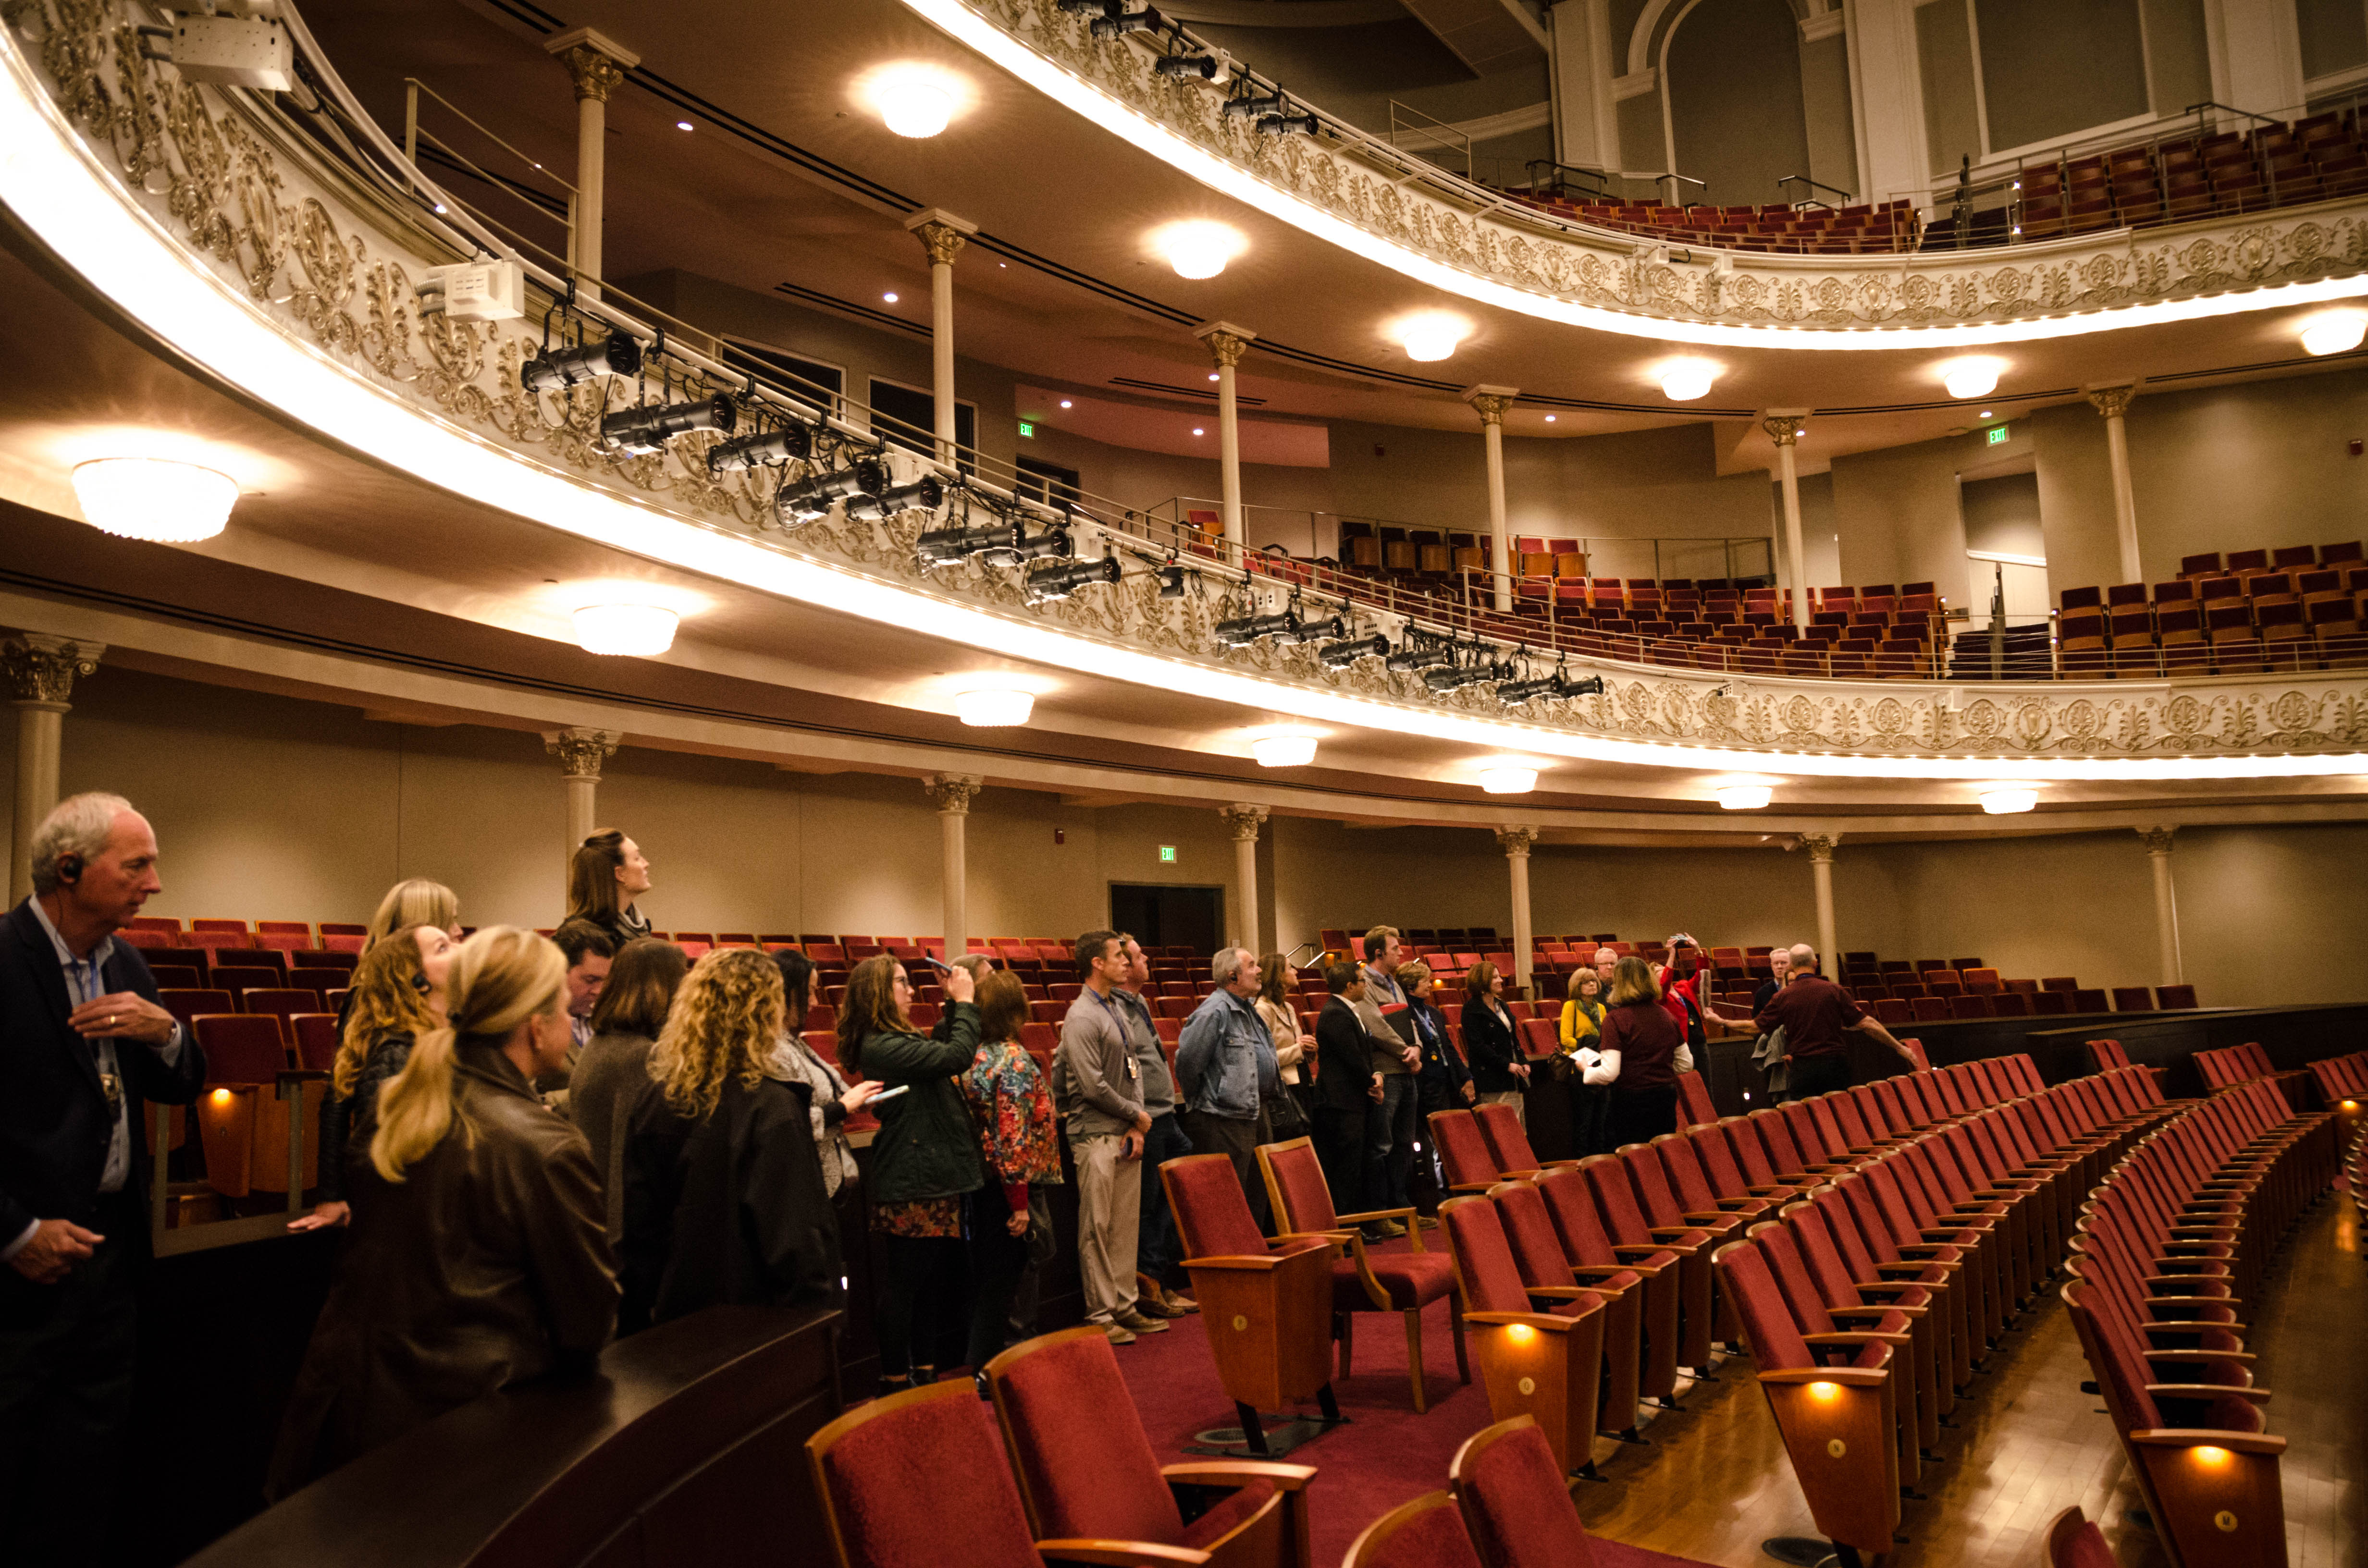 SPMH Backstage and Beyond: Inside Cincinnati Music Hall | Cincinnati ...